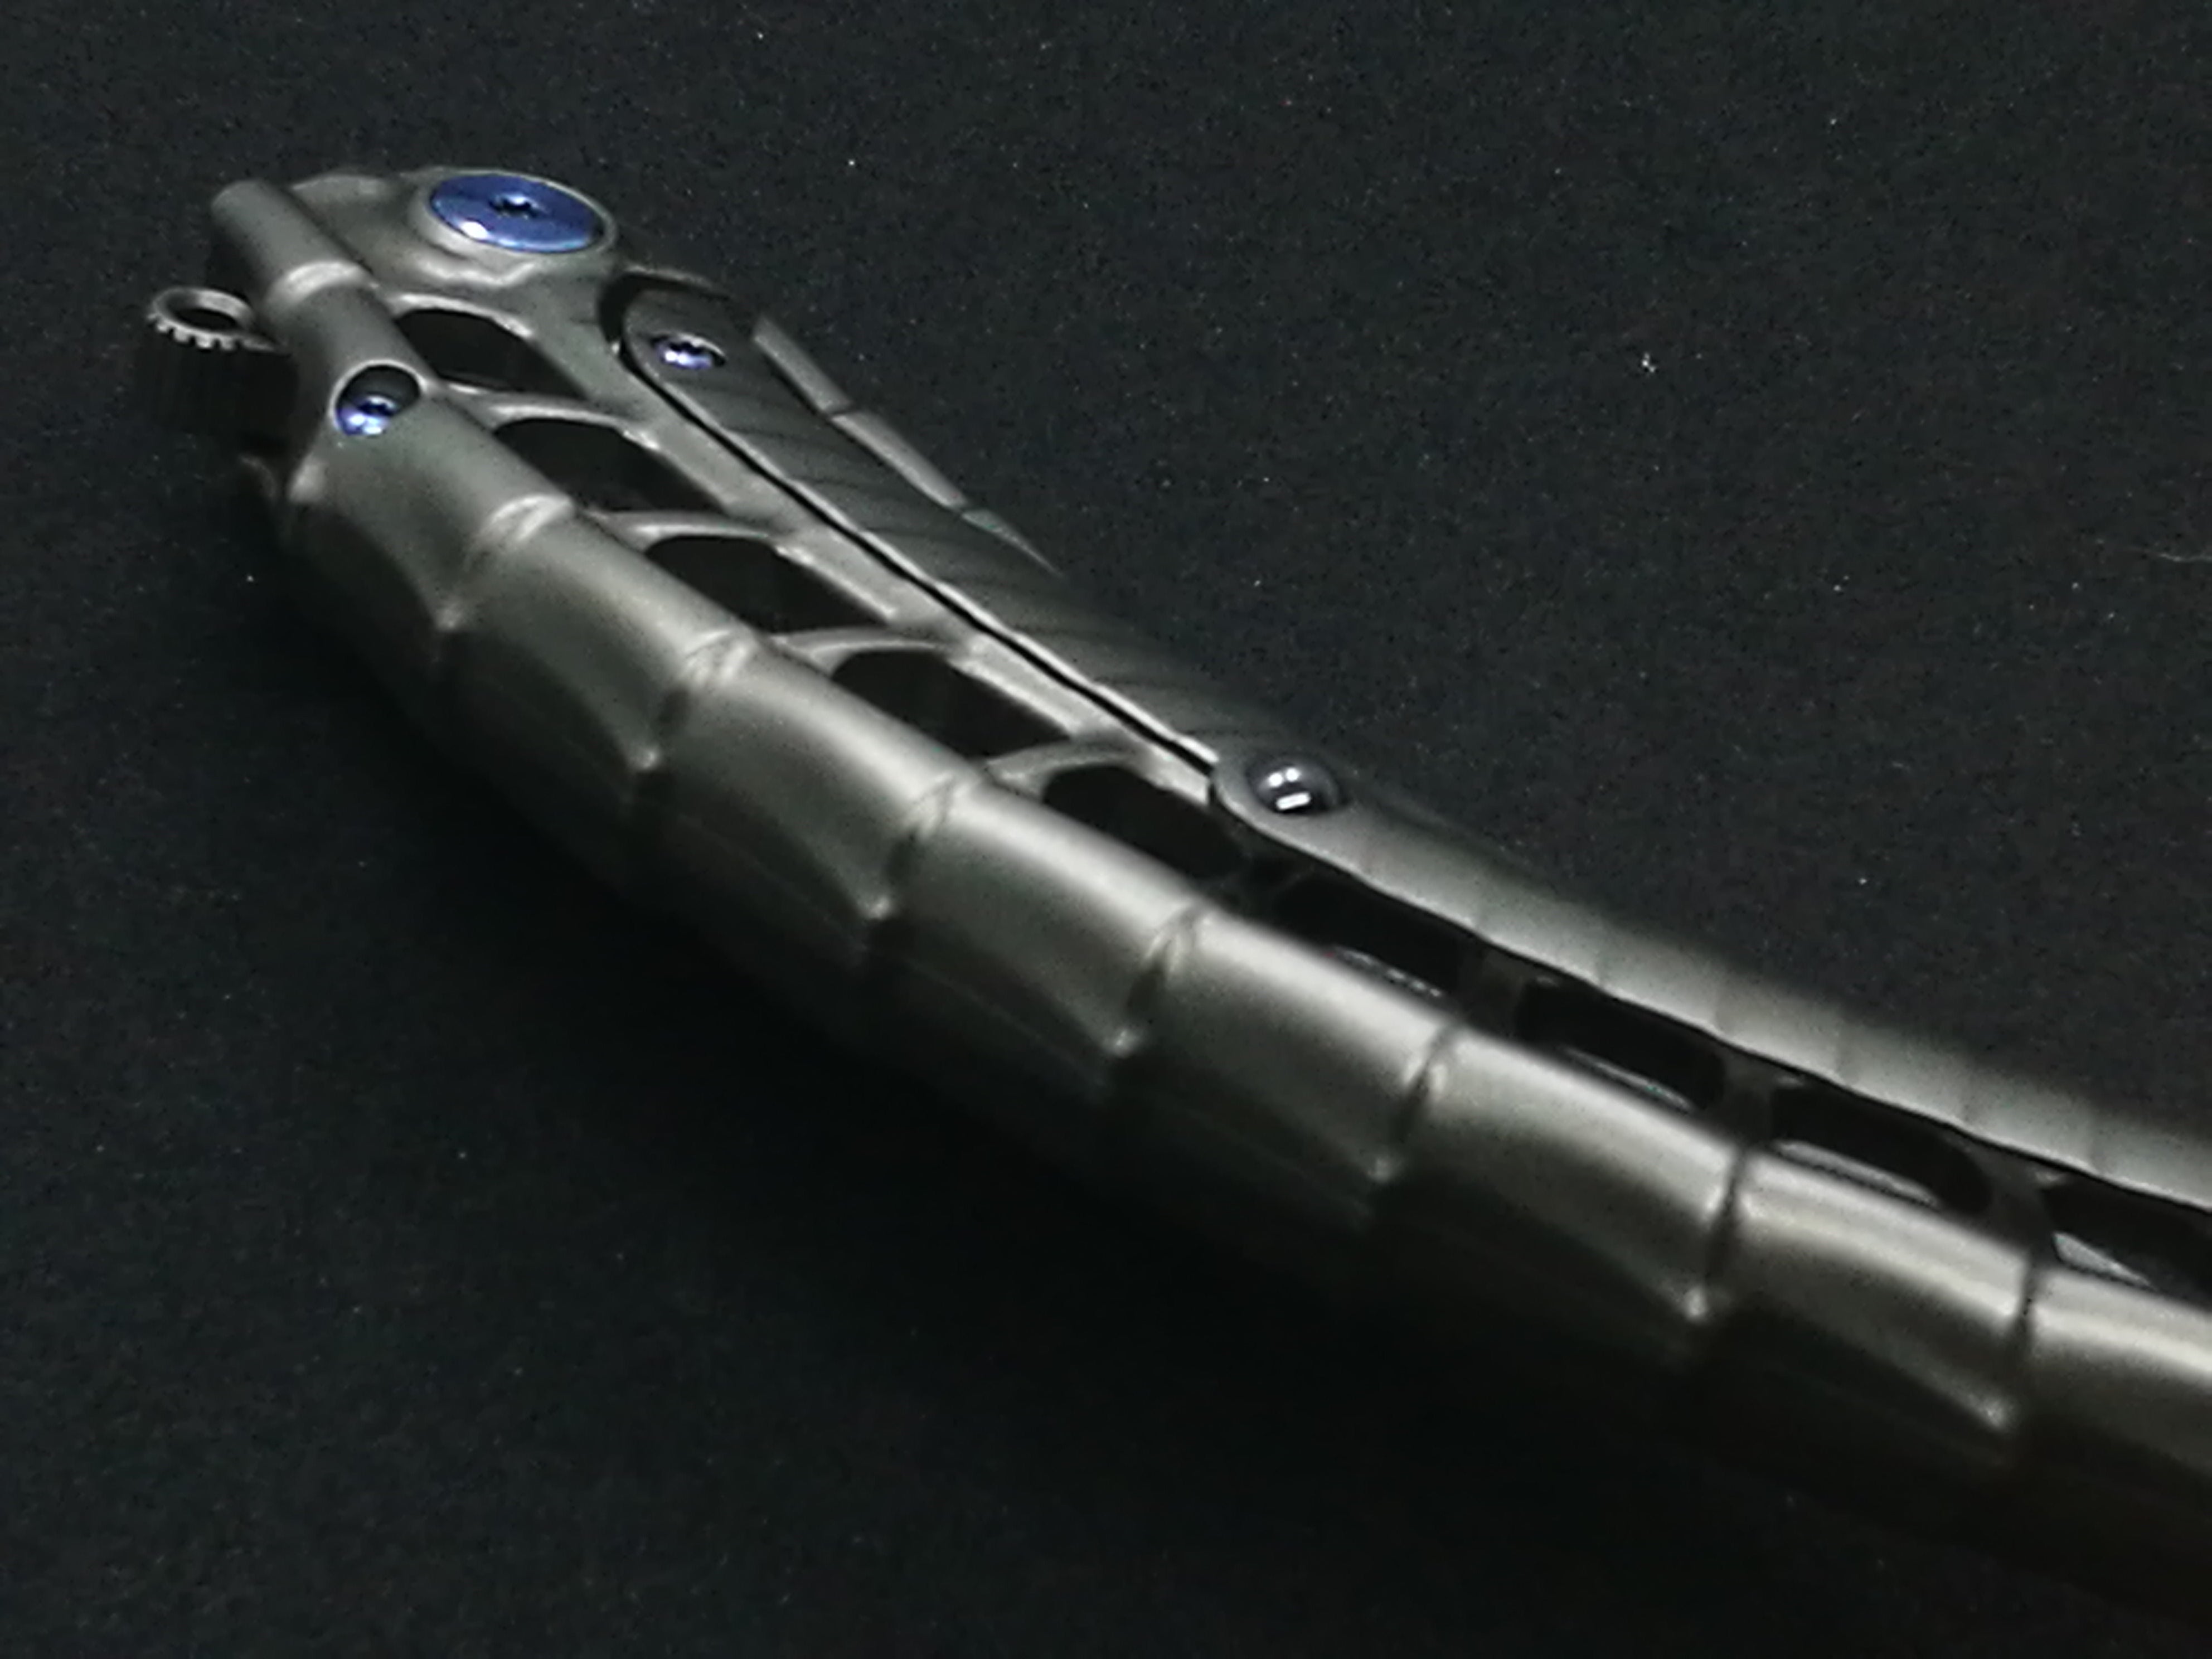 Rike Knife - Alien 4 + Pen Tool